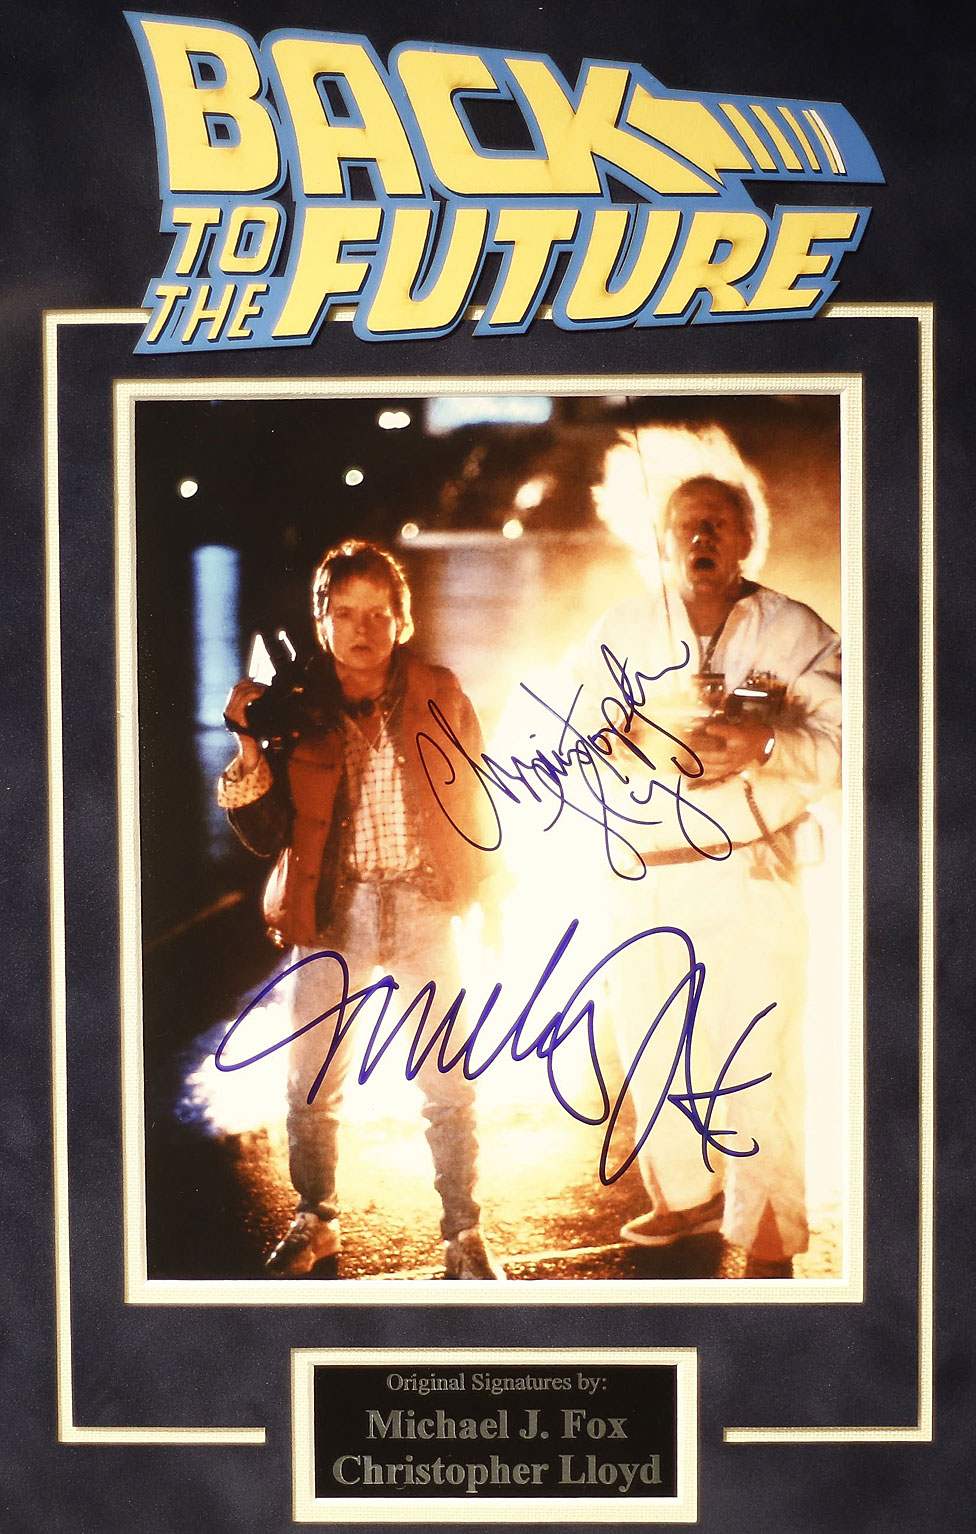 Afiche autografiado de la película "Volver al Futuro" exhibido en la celebración del 30 aniversario de la película en Brasil en 2015